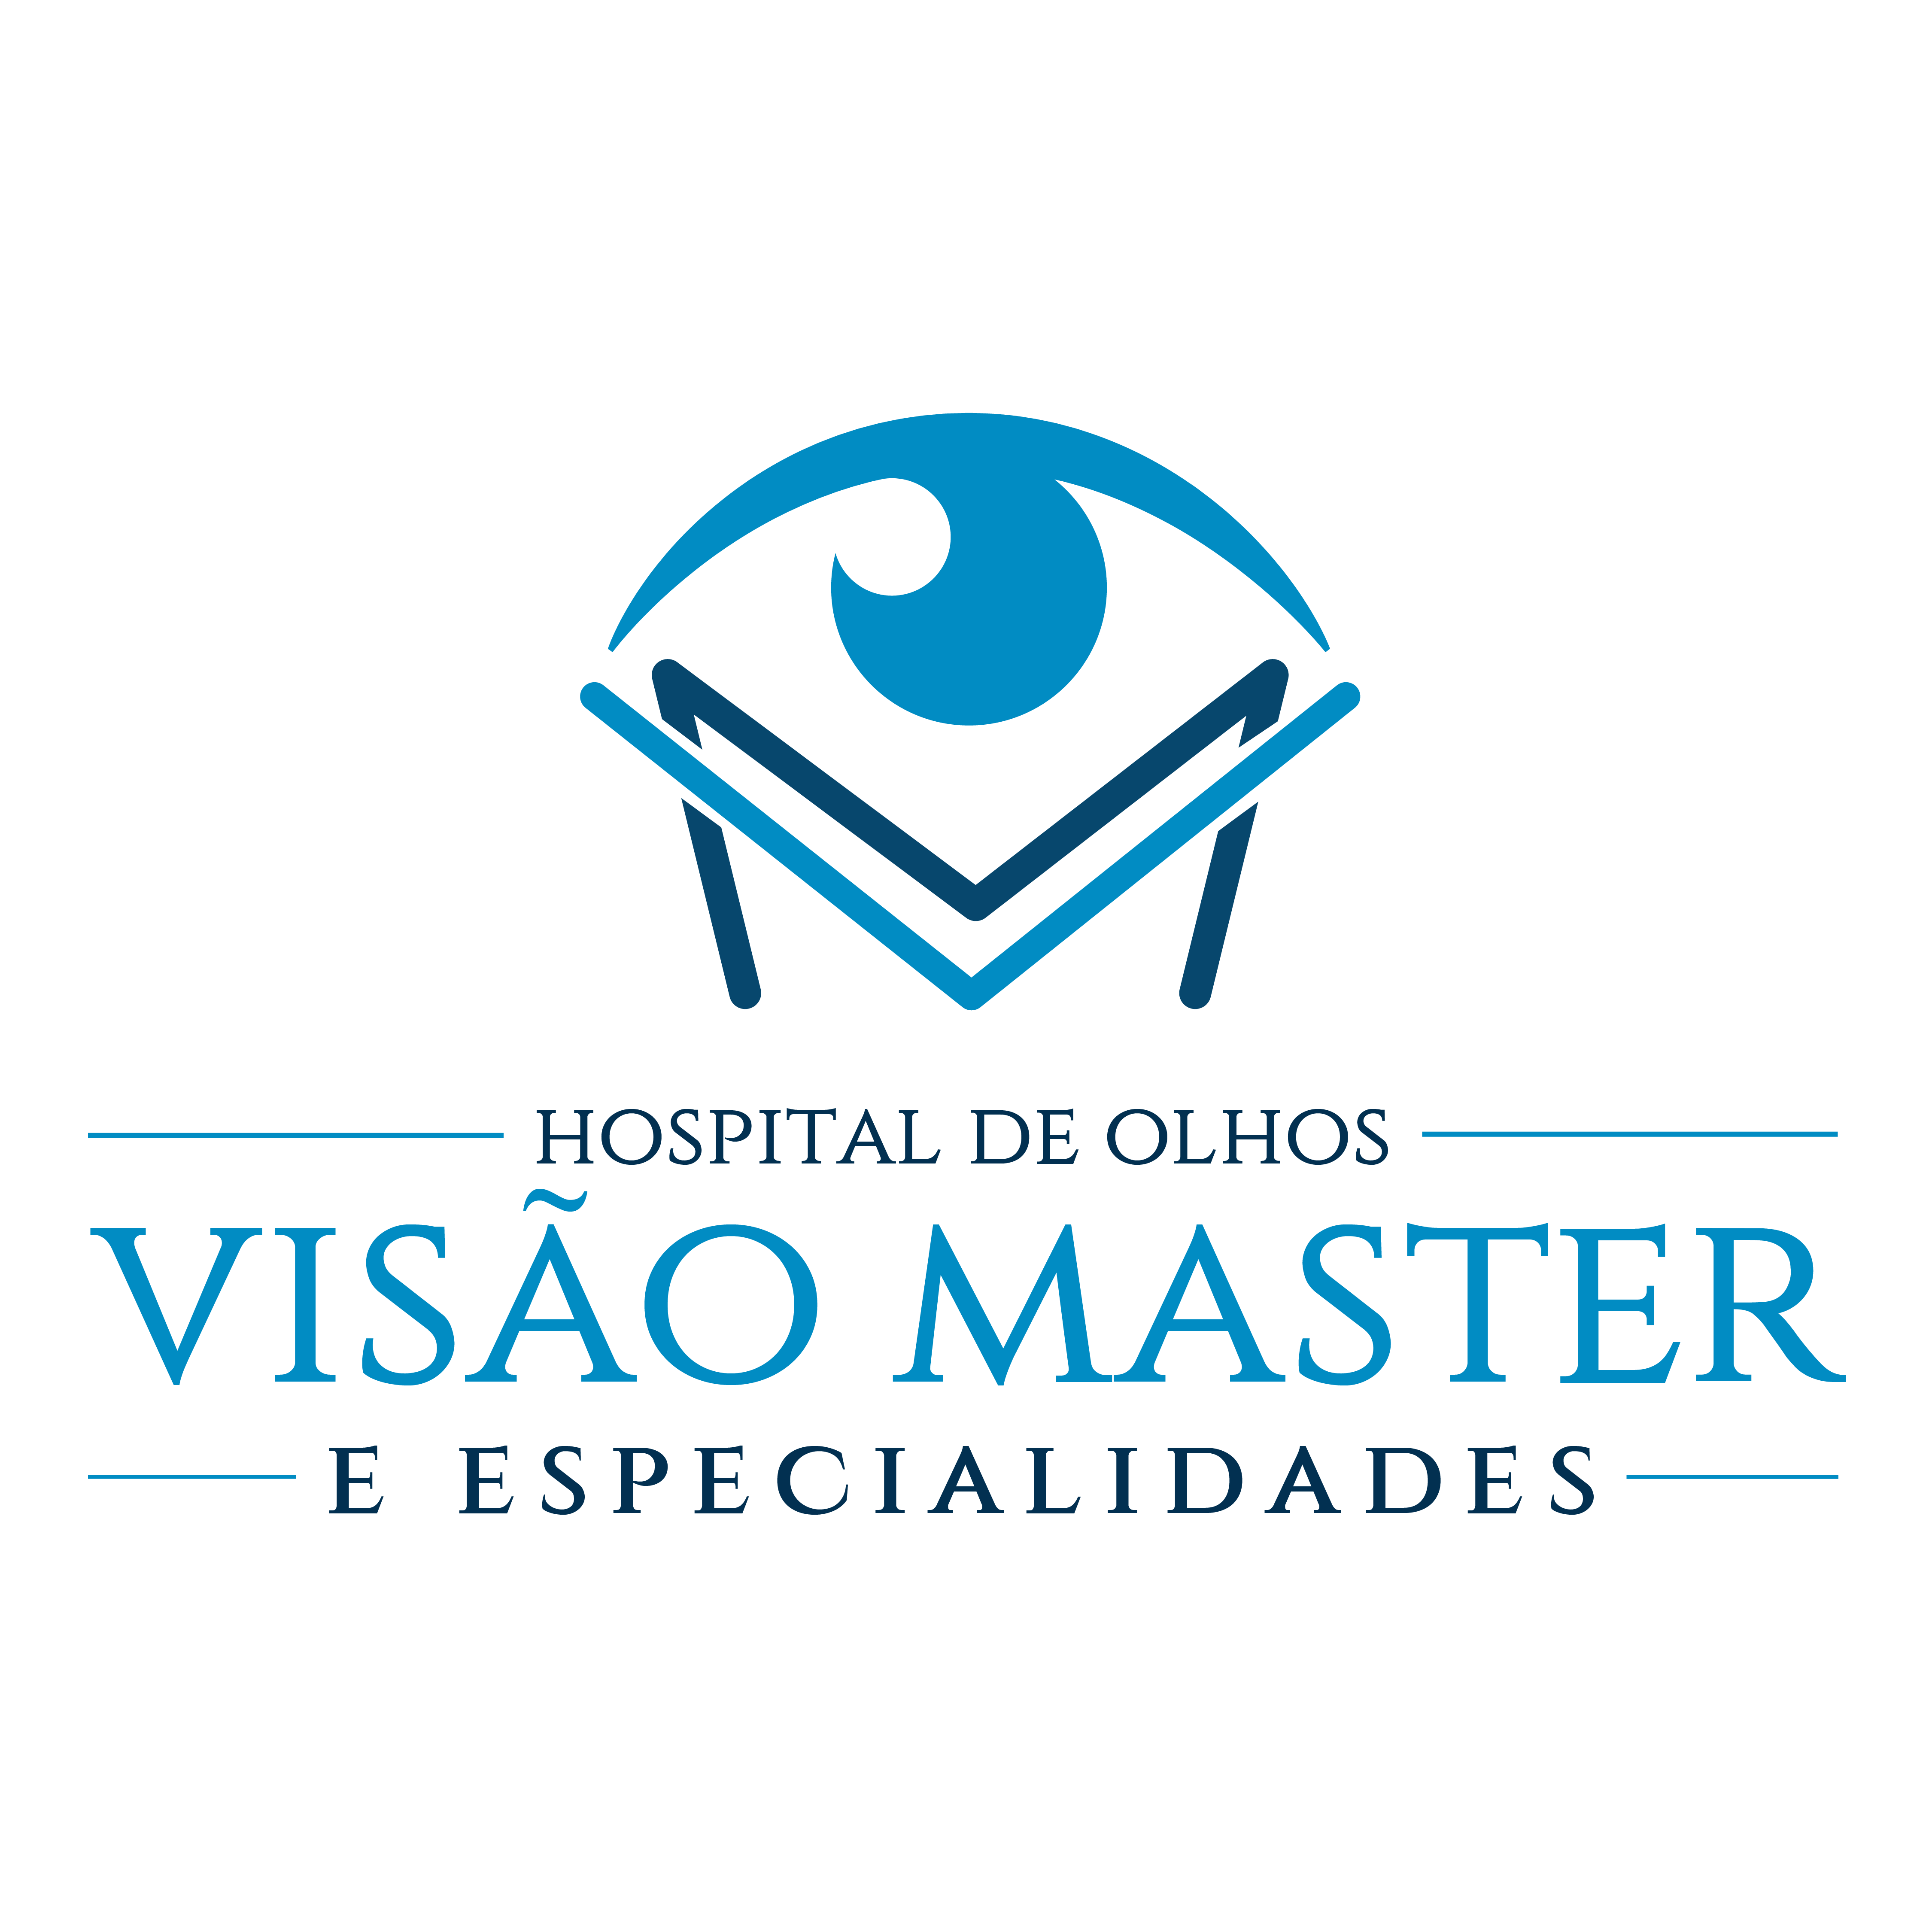 HOSPITAL DE OLHOS VISÃO MASTER E ESPECIALIDADES